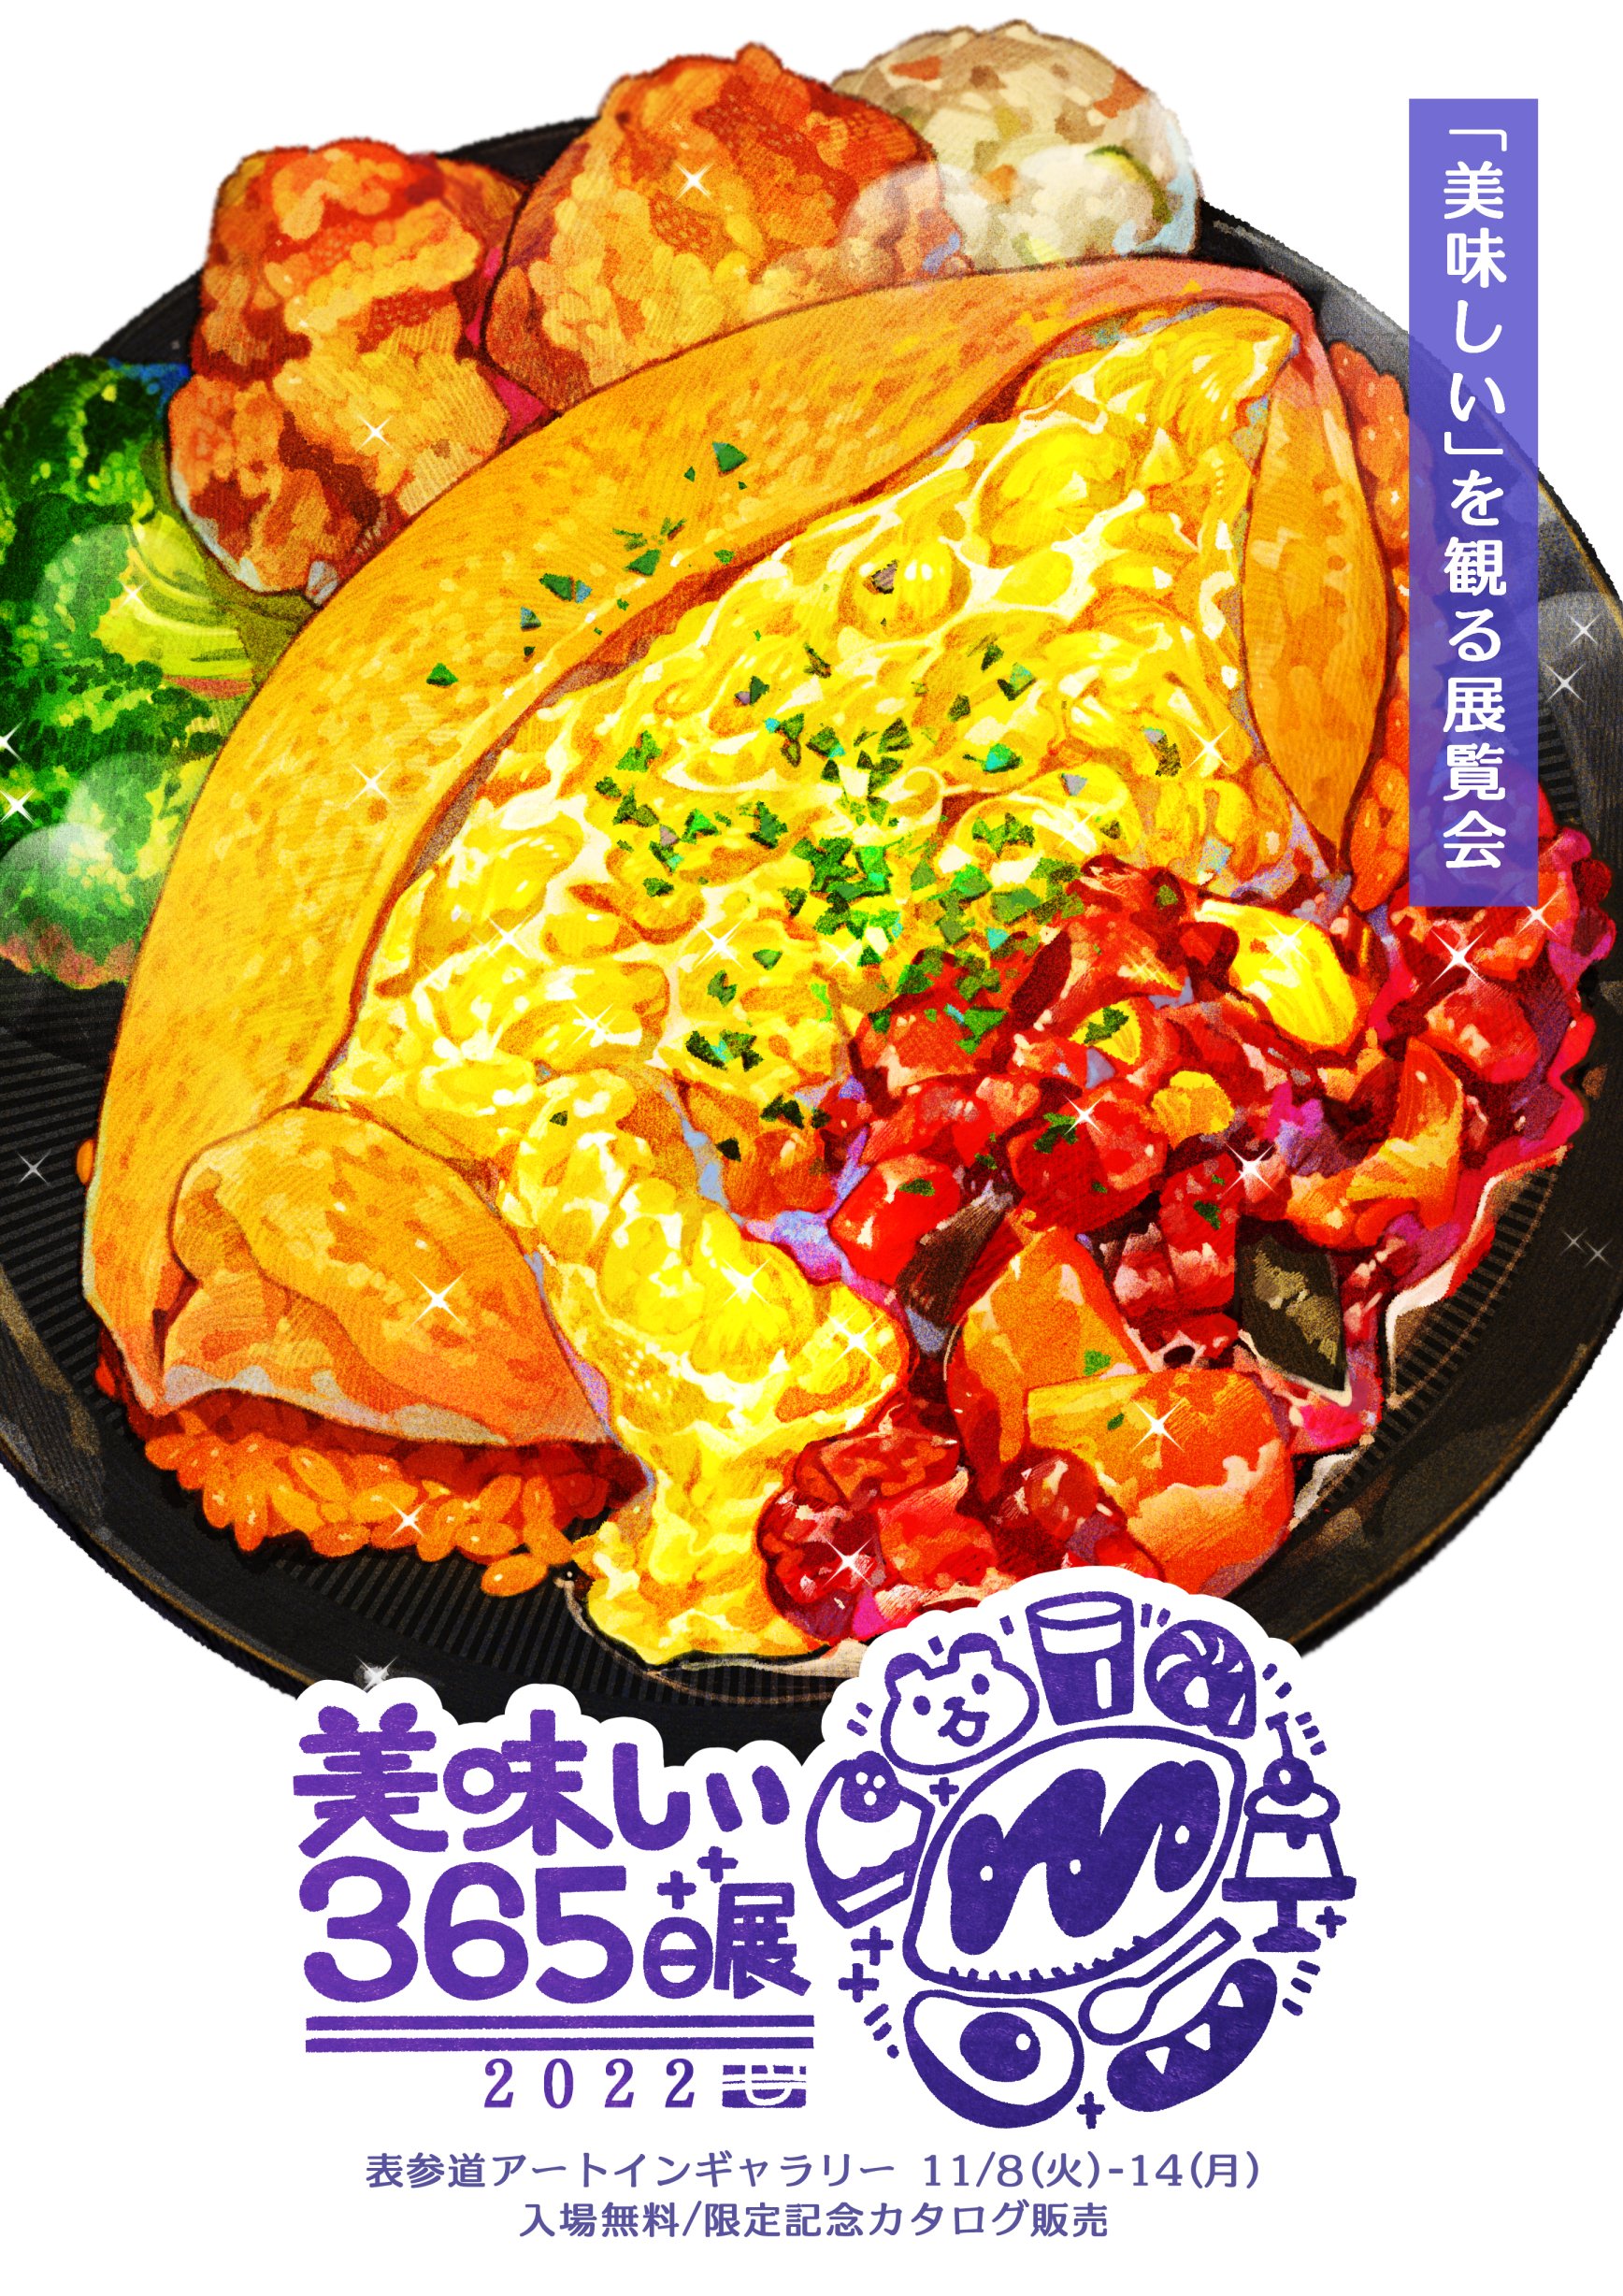 もみじ真魚 美味しい365日展 11 8 火 11 14 月 表参道で開催 Mamomiji Twitter